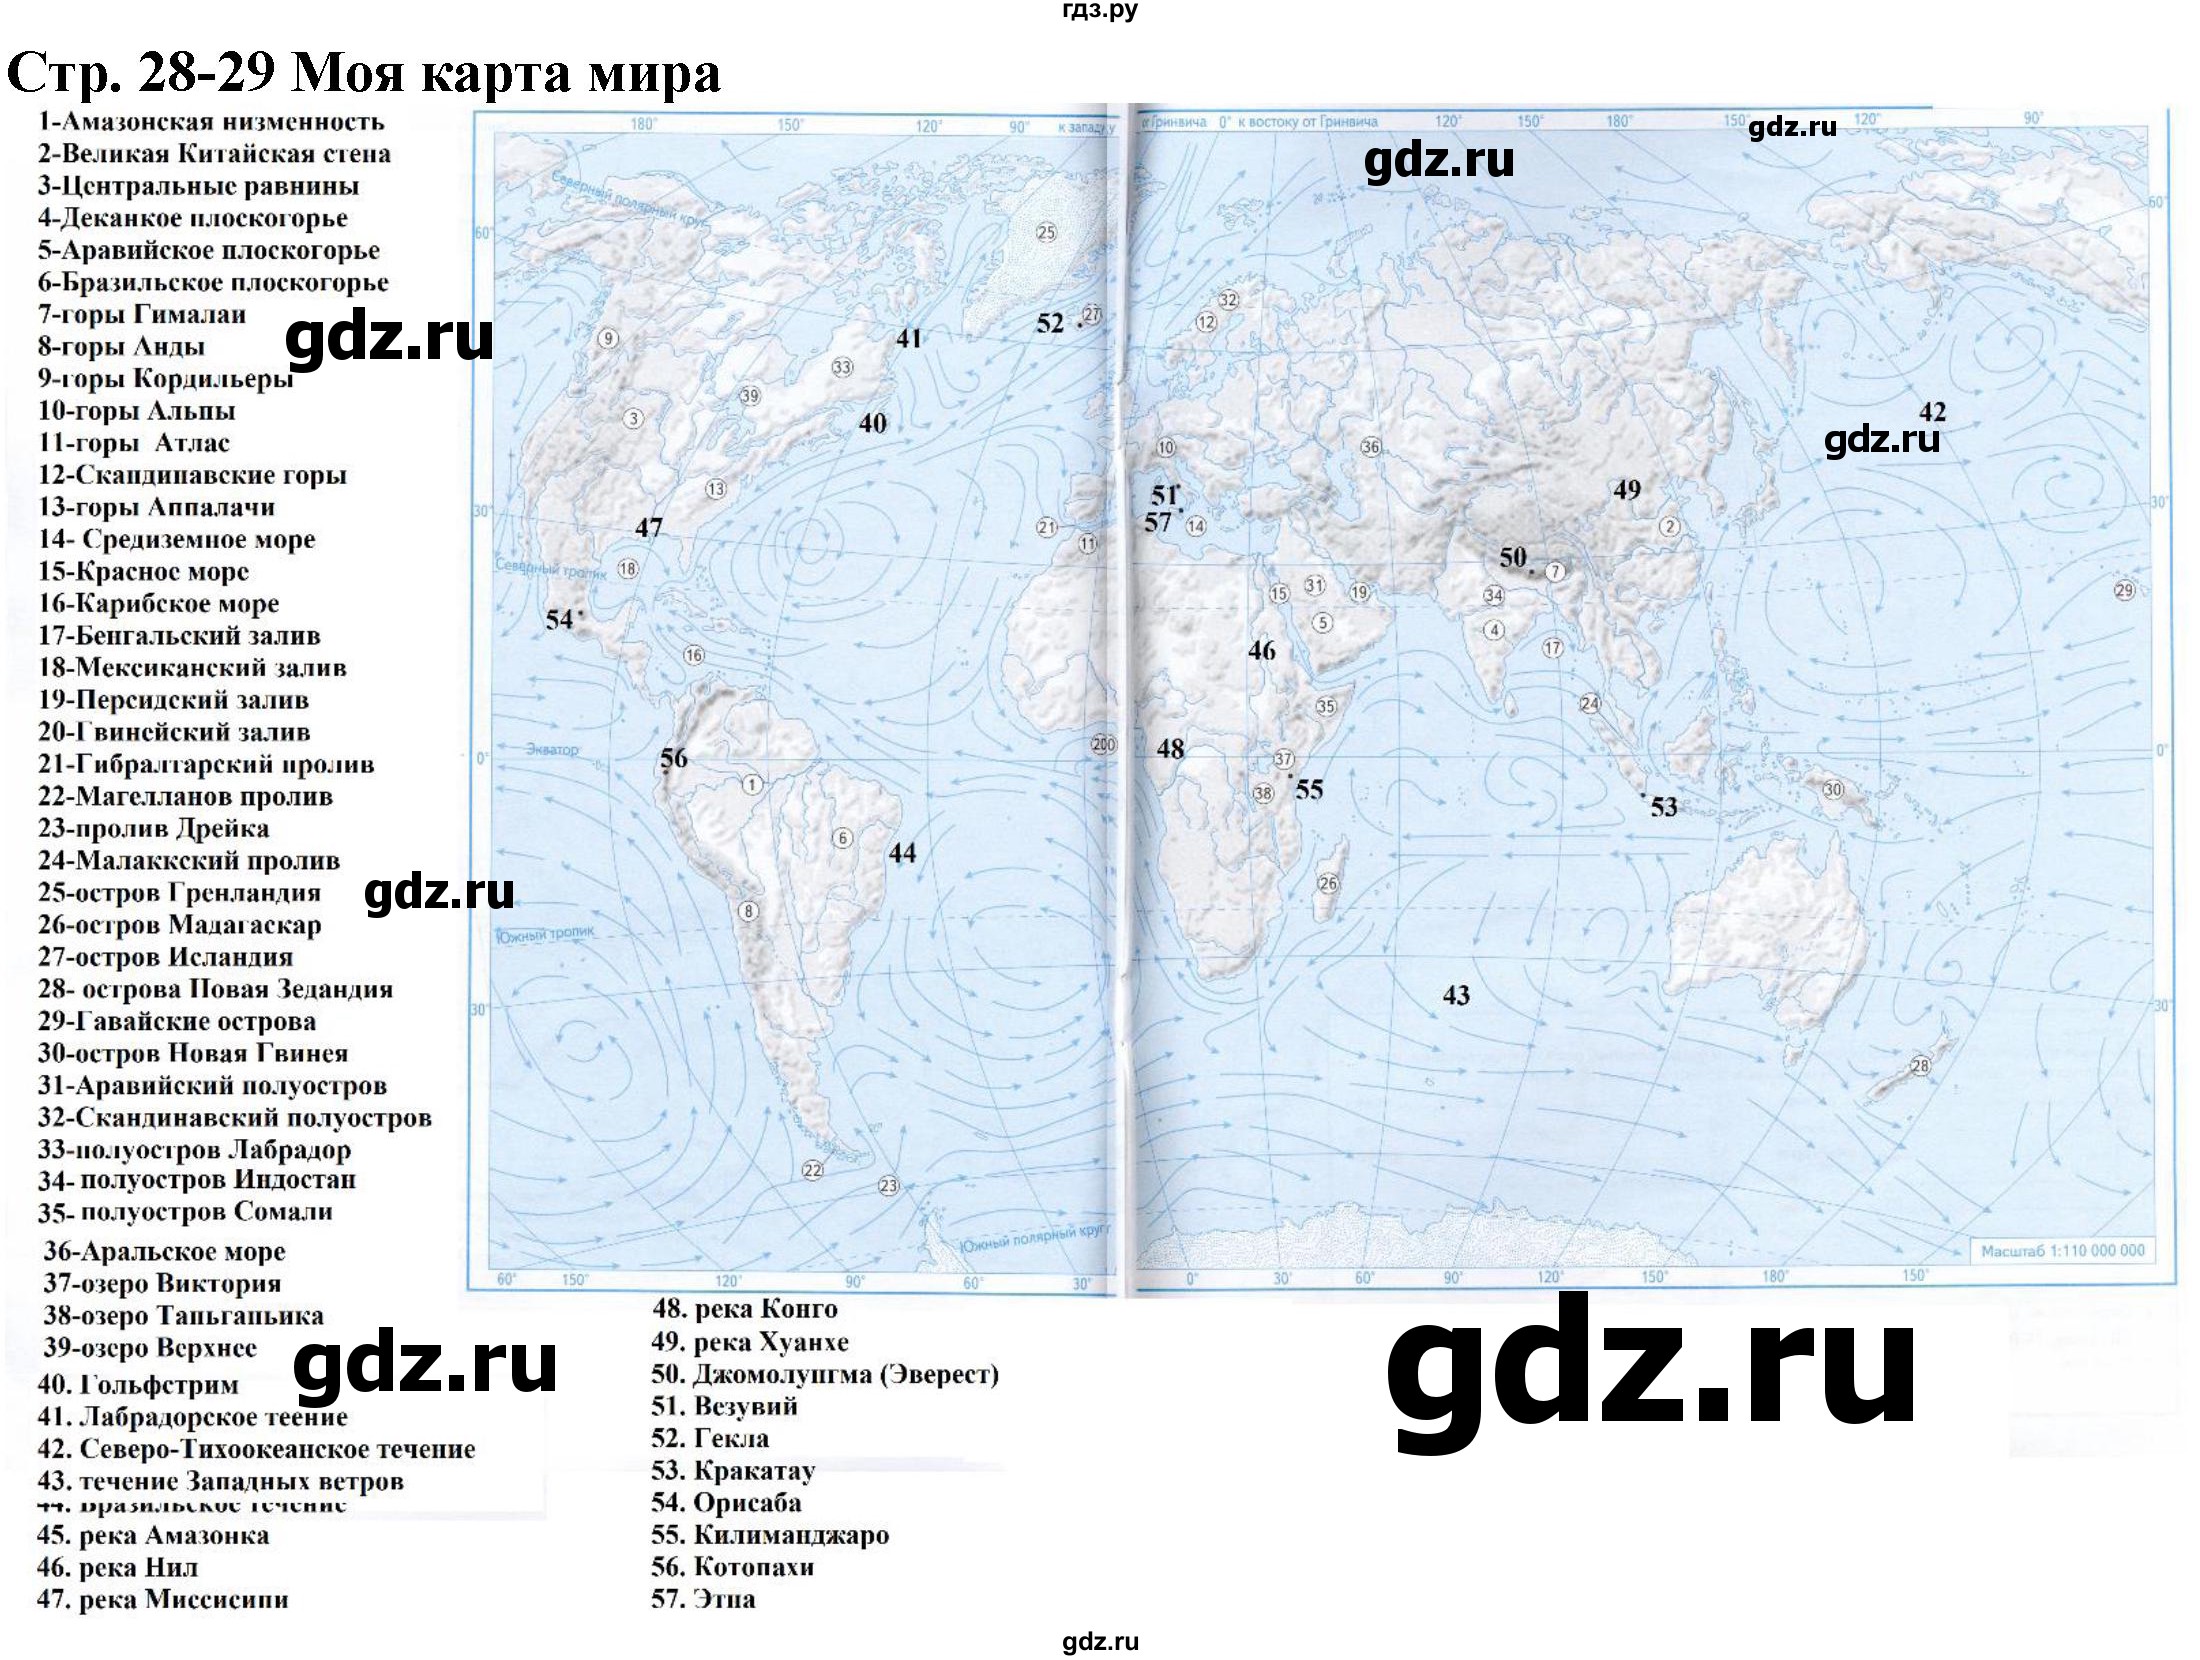 ГДЗ контурные карты стр.28-29 география 6 класс атлас и контурные картыЛетягин, Душина